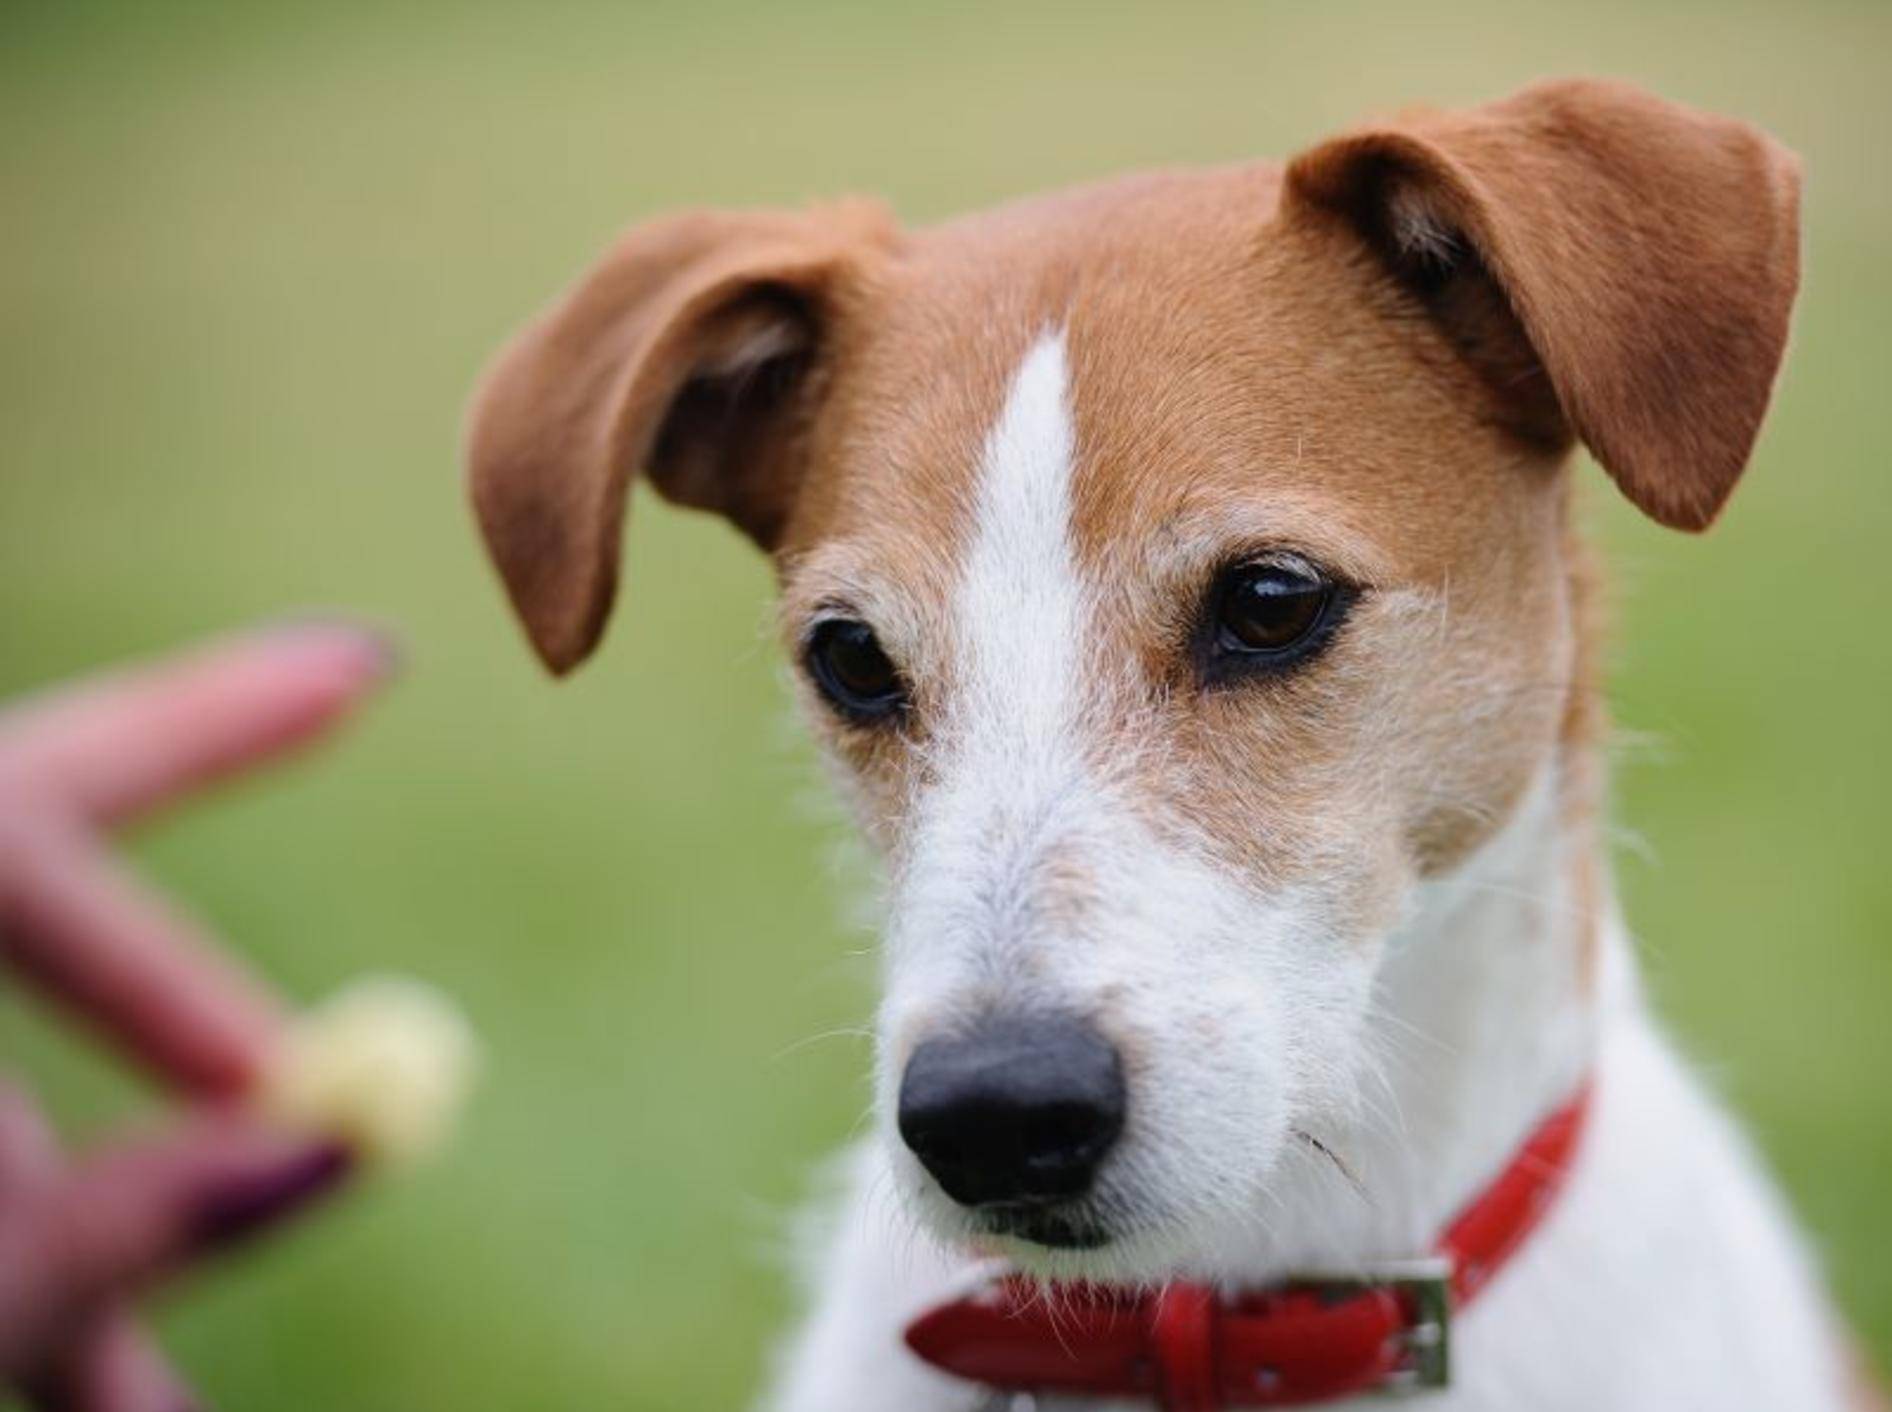 Futterbeutel für den Spaziergang und den Hundesport – Bild: Shutterstock / godrick